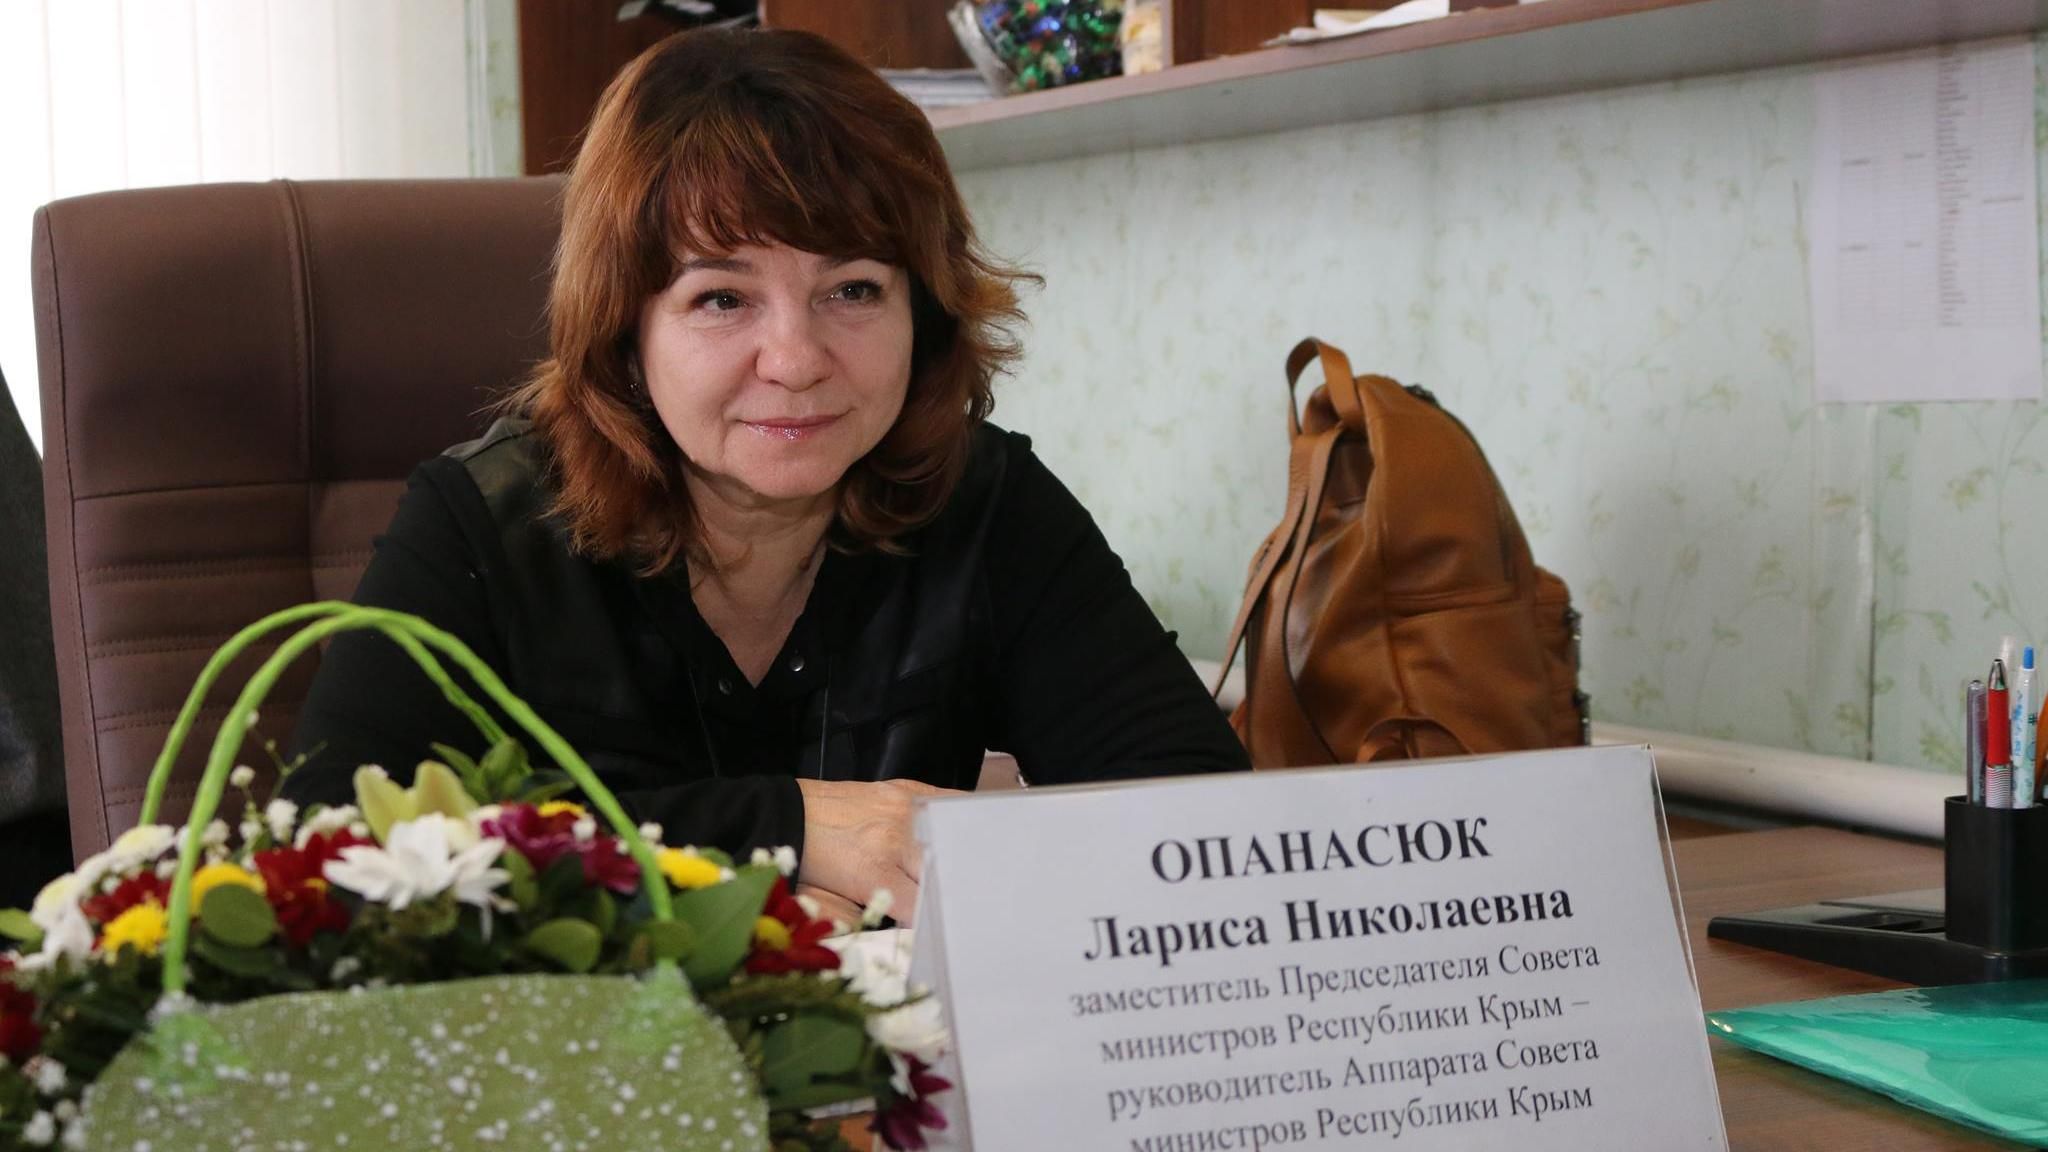 Сестры Анна и Мария Опанасюк - мать певиц поддерживает аннексию Крыма